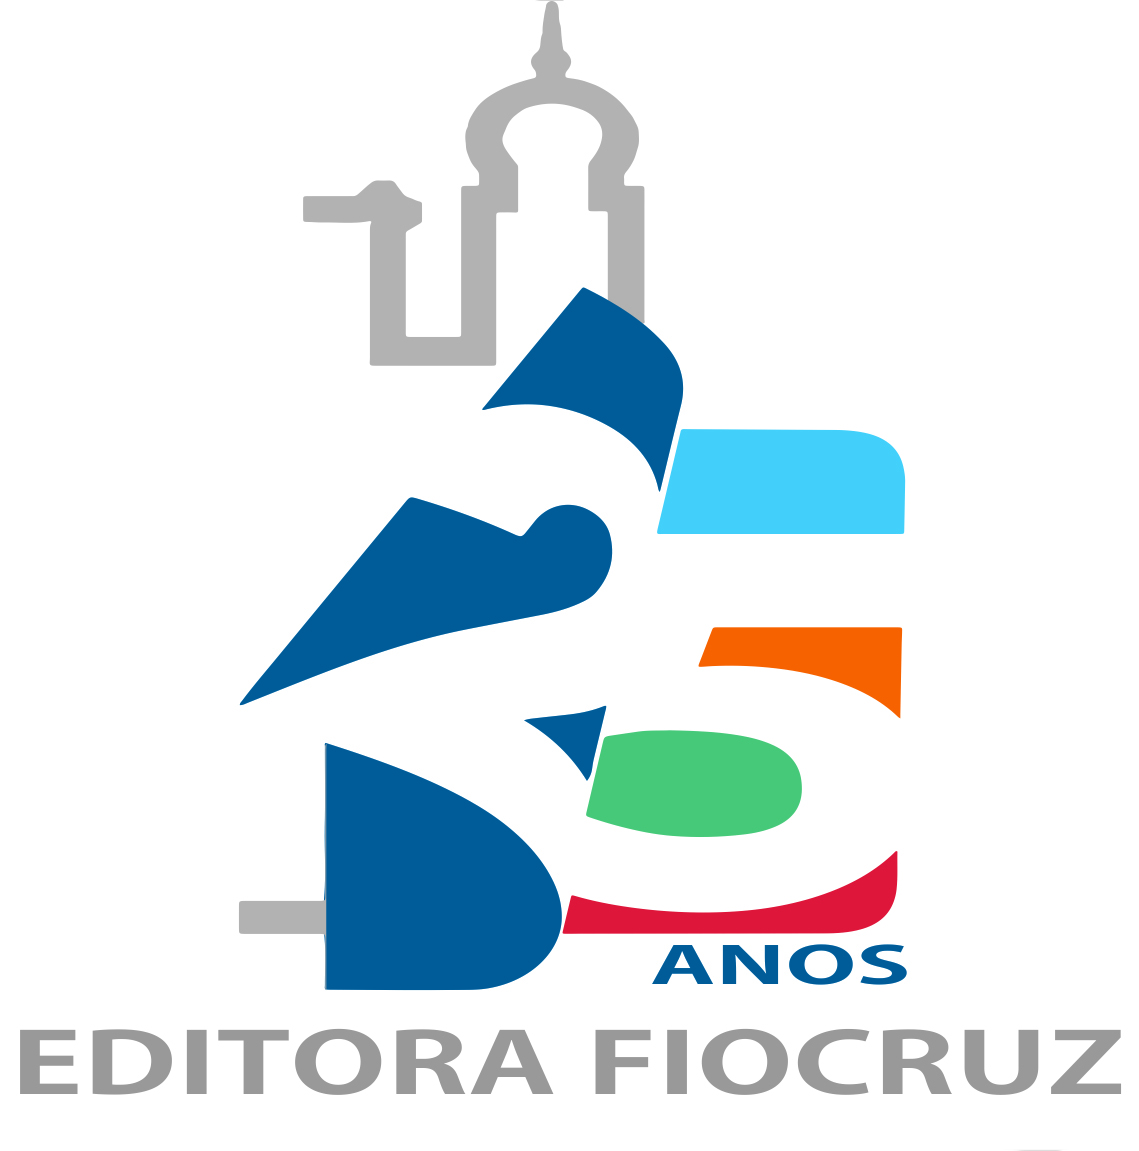 Celebrando 25 anos, Editora Fiocruz realiza o 1º Seminário Brasileiro de Edição Universitária e Acadêmica